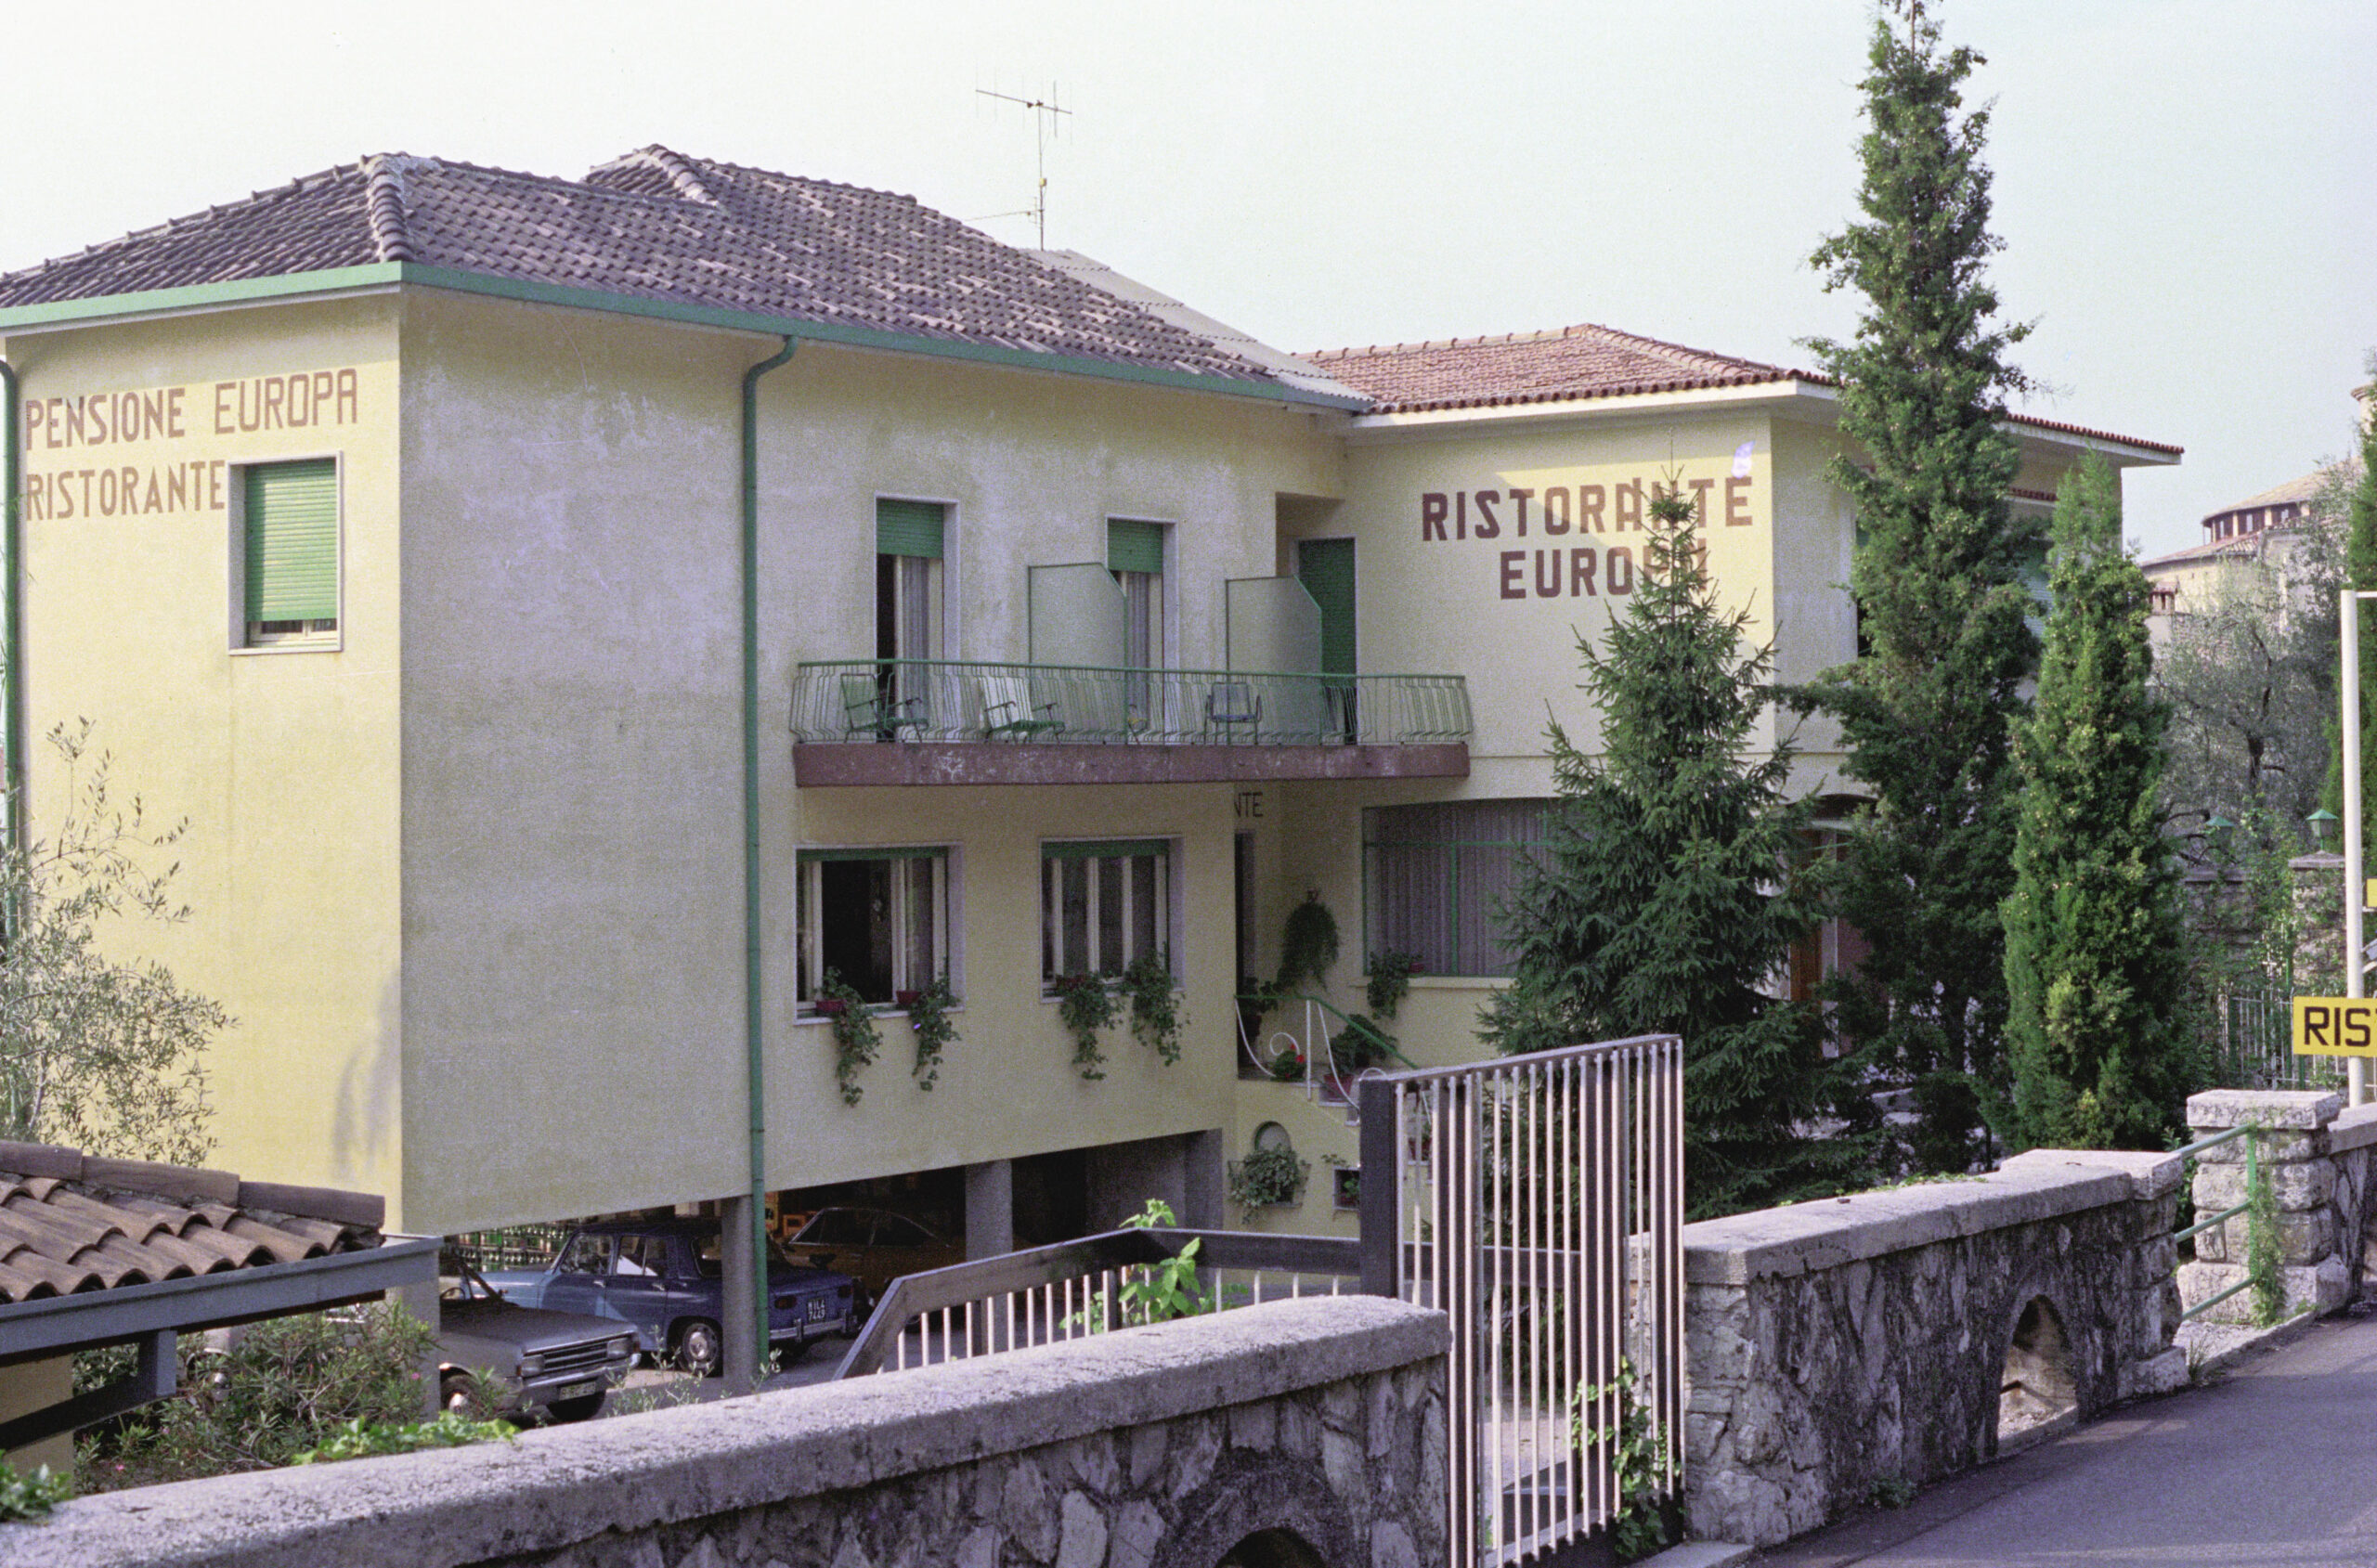 1971 - Start of management of the Frassine family